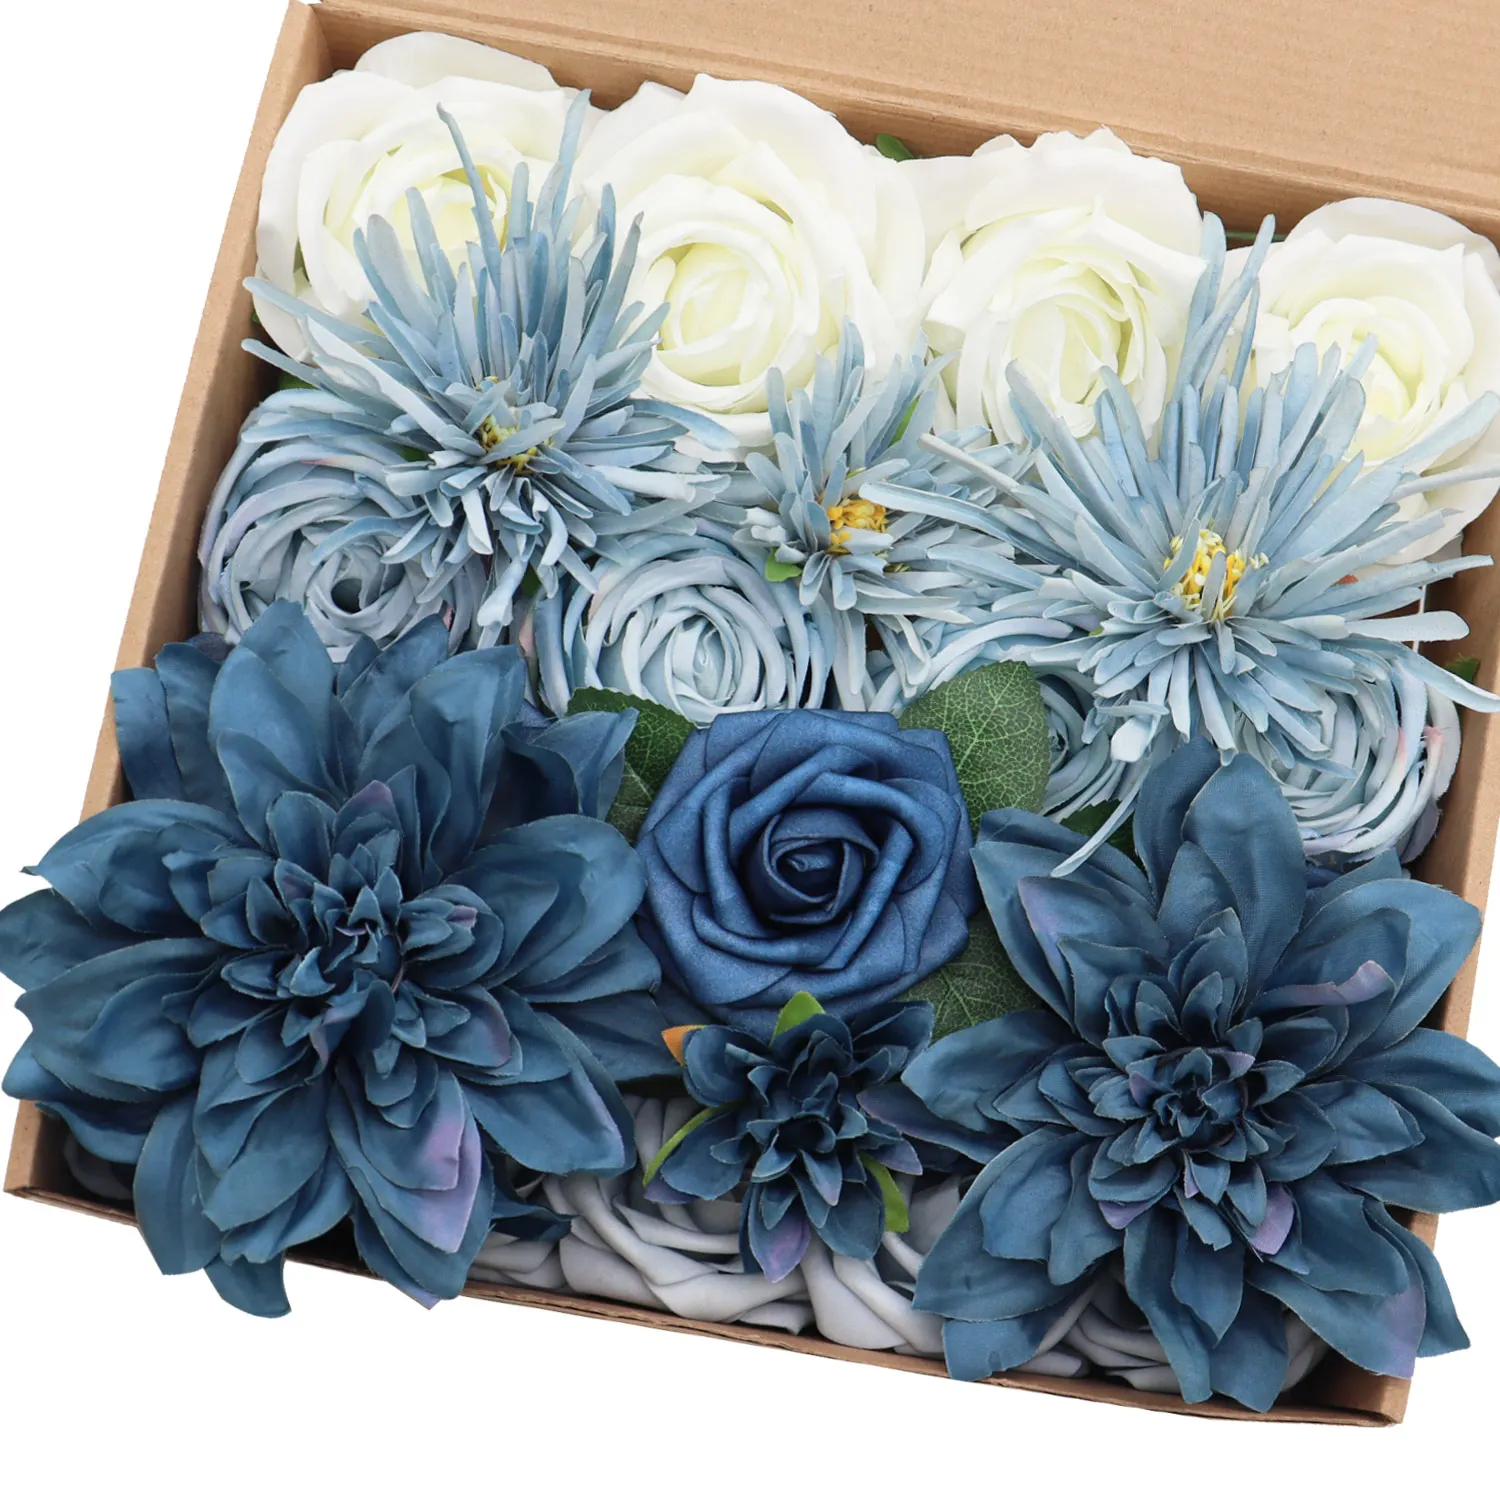 

Mefier Artificial Flowers Classic Dusty Blue Flowers Combo Wedding Flowers for DIY Bouquets Centerpieces Floral Arrangements